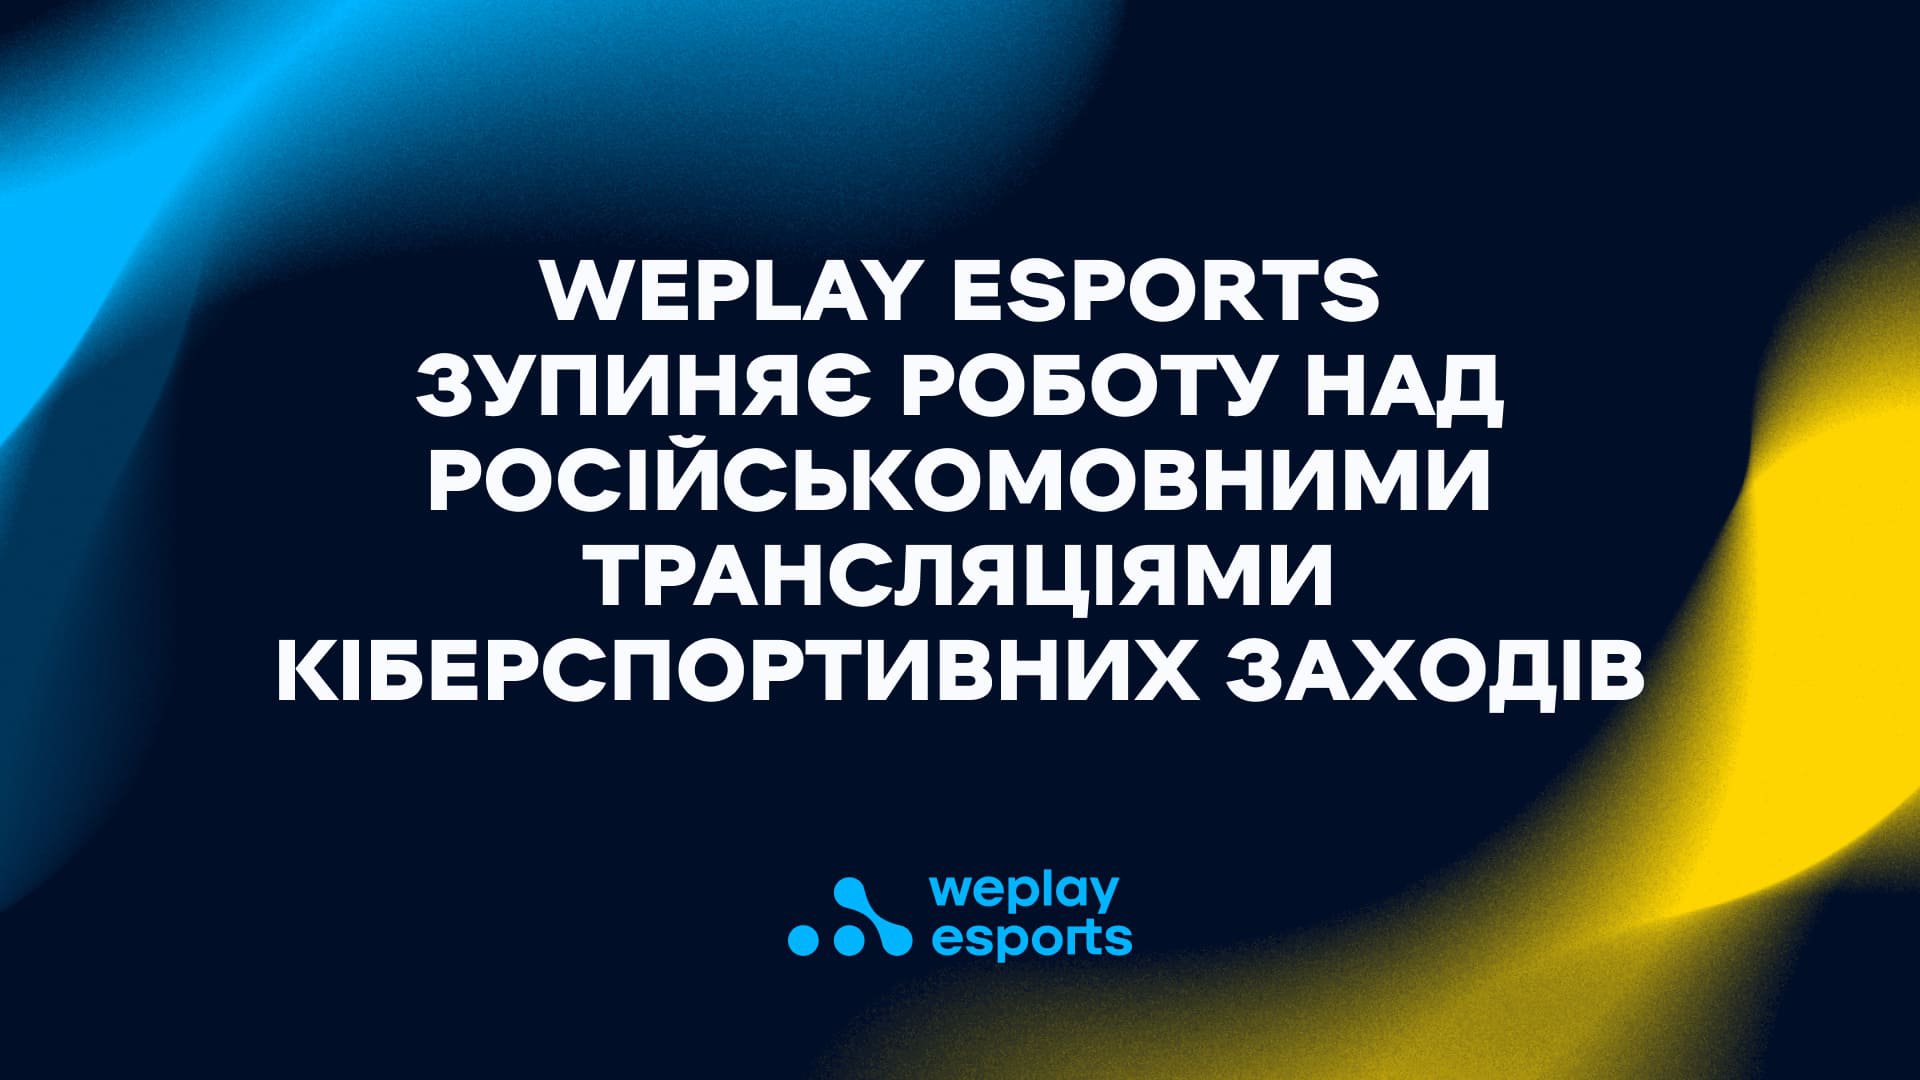 WePlay Esports зупиняє роботу над російськомовними трансляціями кіберспортивних заходів. Зображення: WePlay Holding